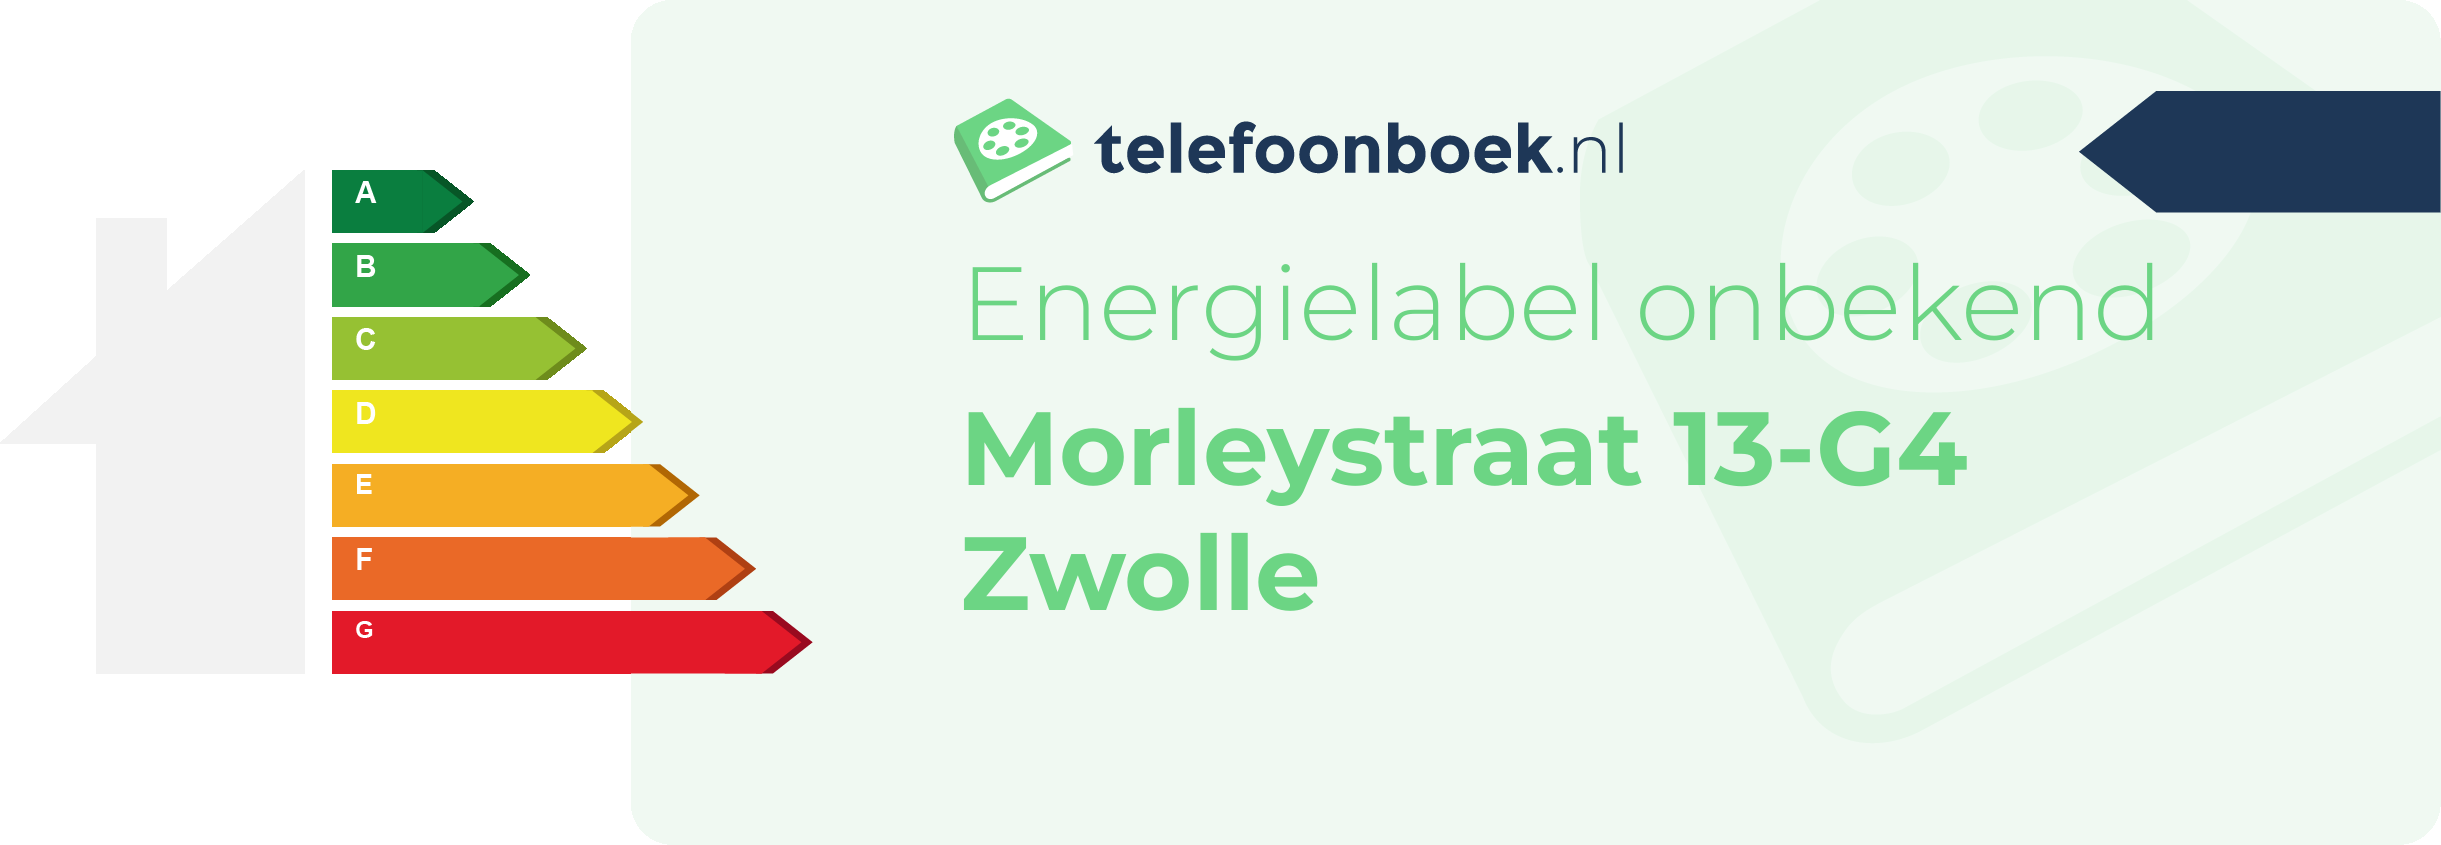 Energielabel Morleystraat 13-G4 Zwolle